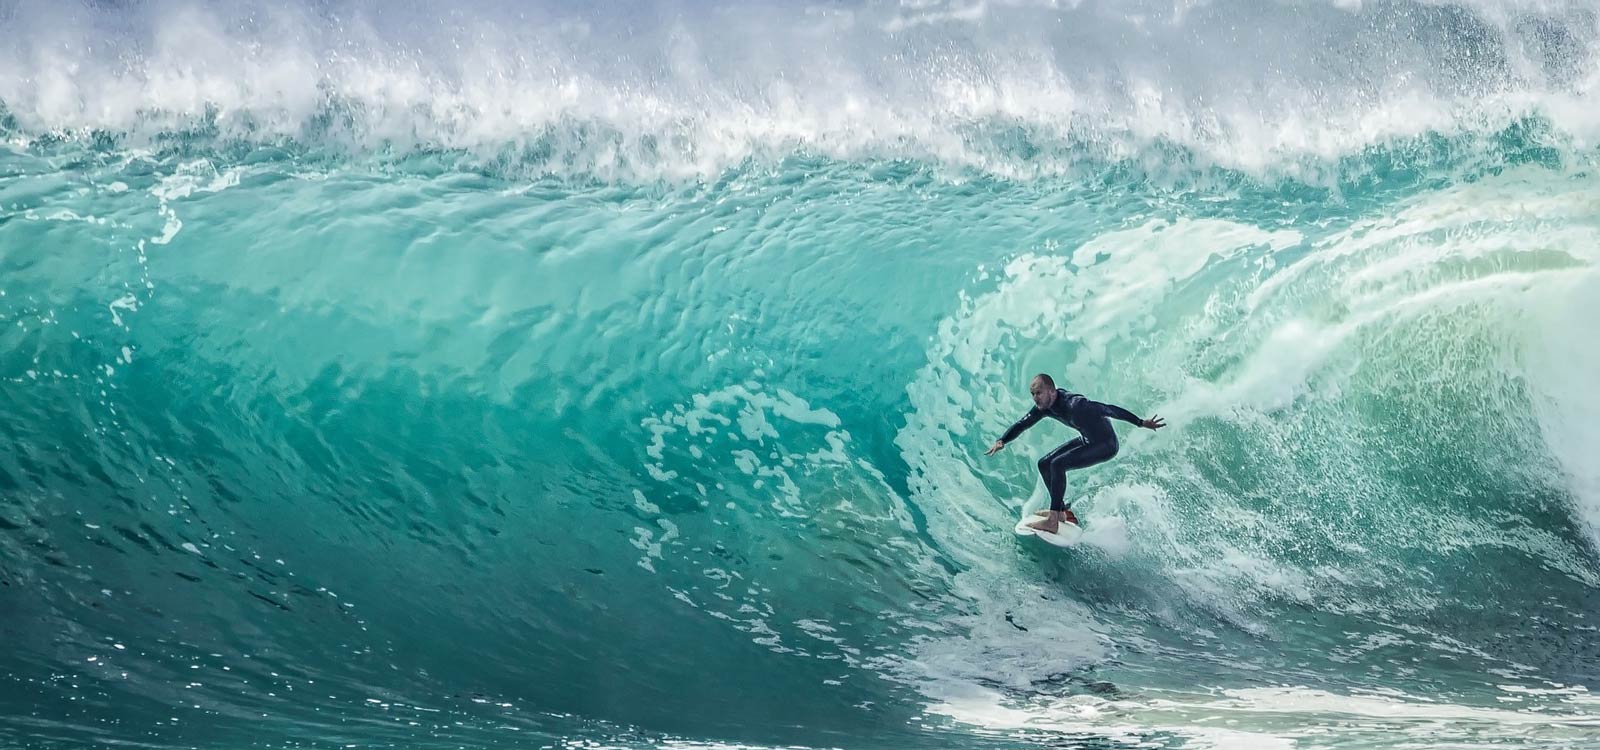 Surfer riding huge wave